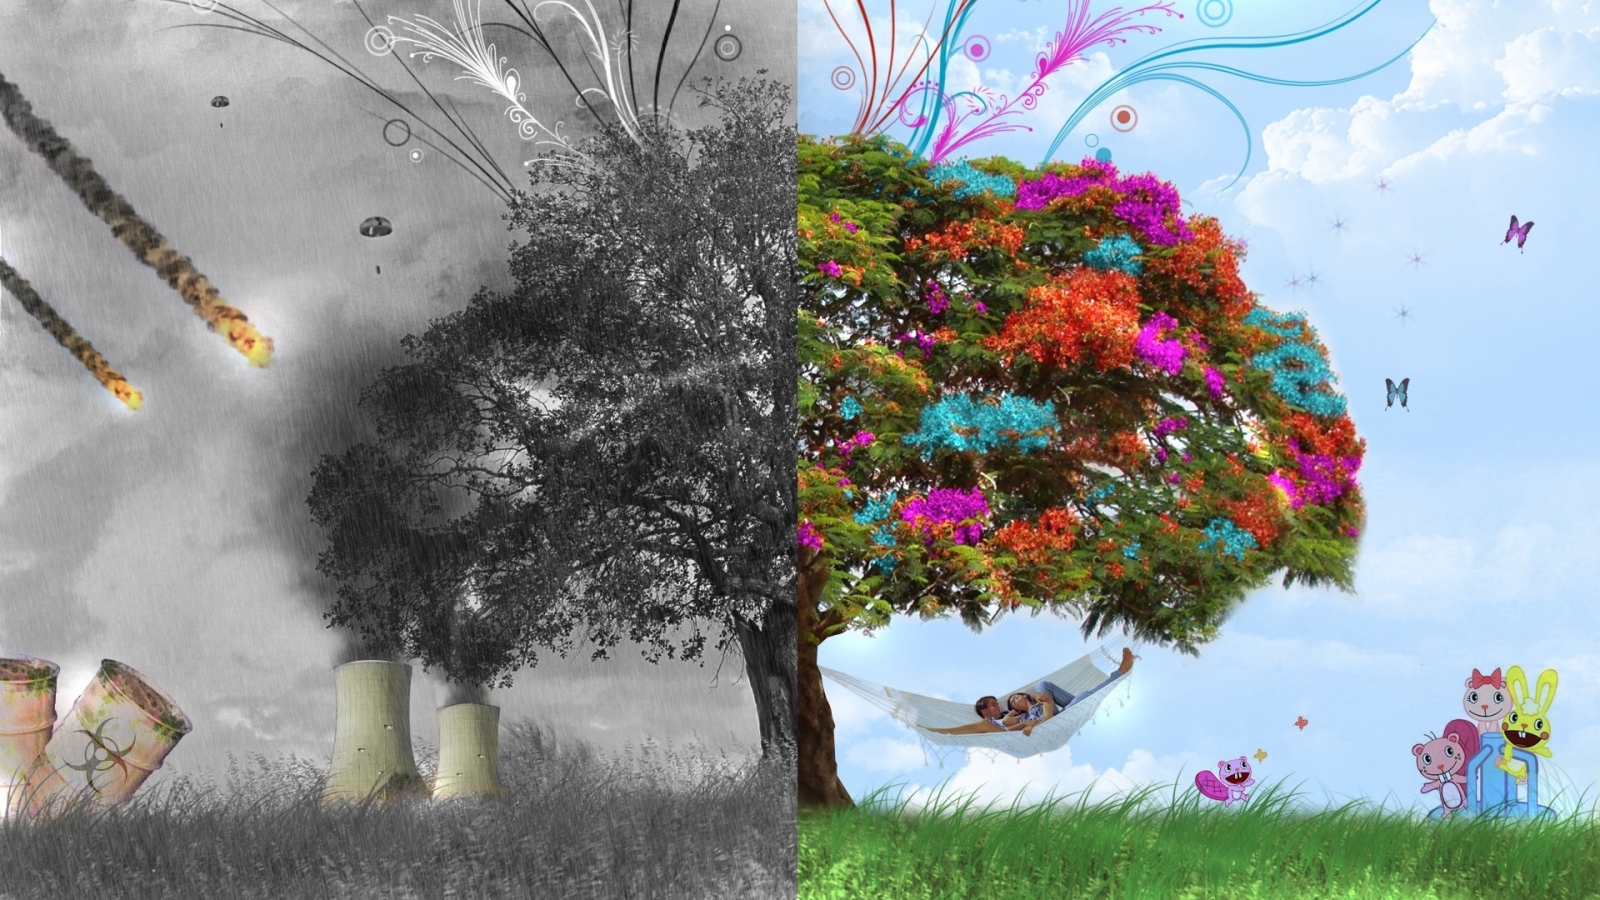 3D Tree Fantasy for 1600 x 900 HDTV resolution